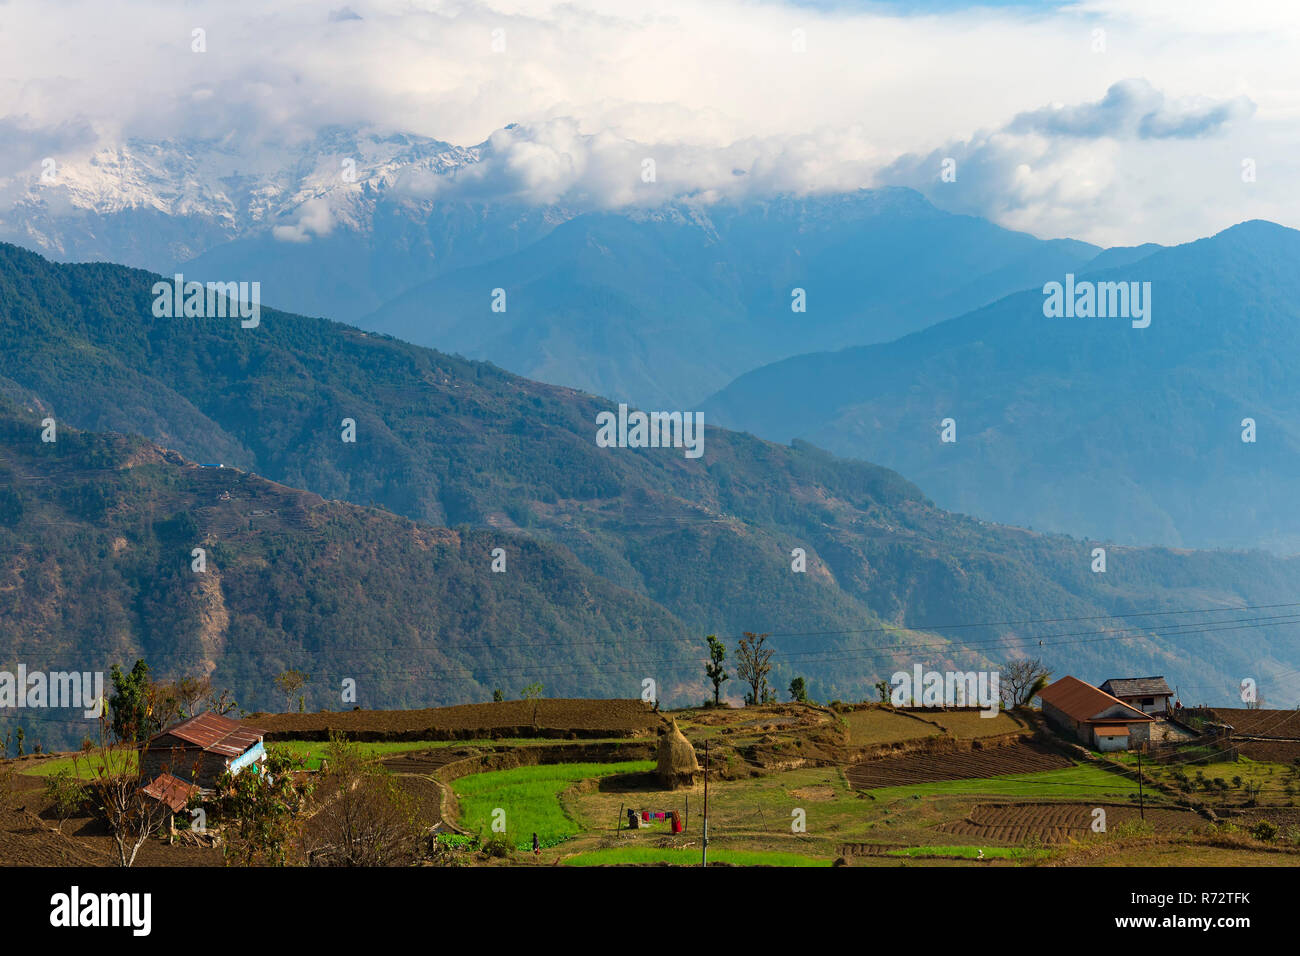 Himalaya range viewed from Dhampus Mountain village, Nepal Stock Photo